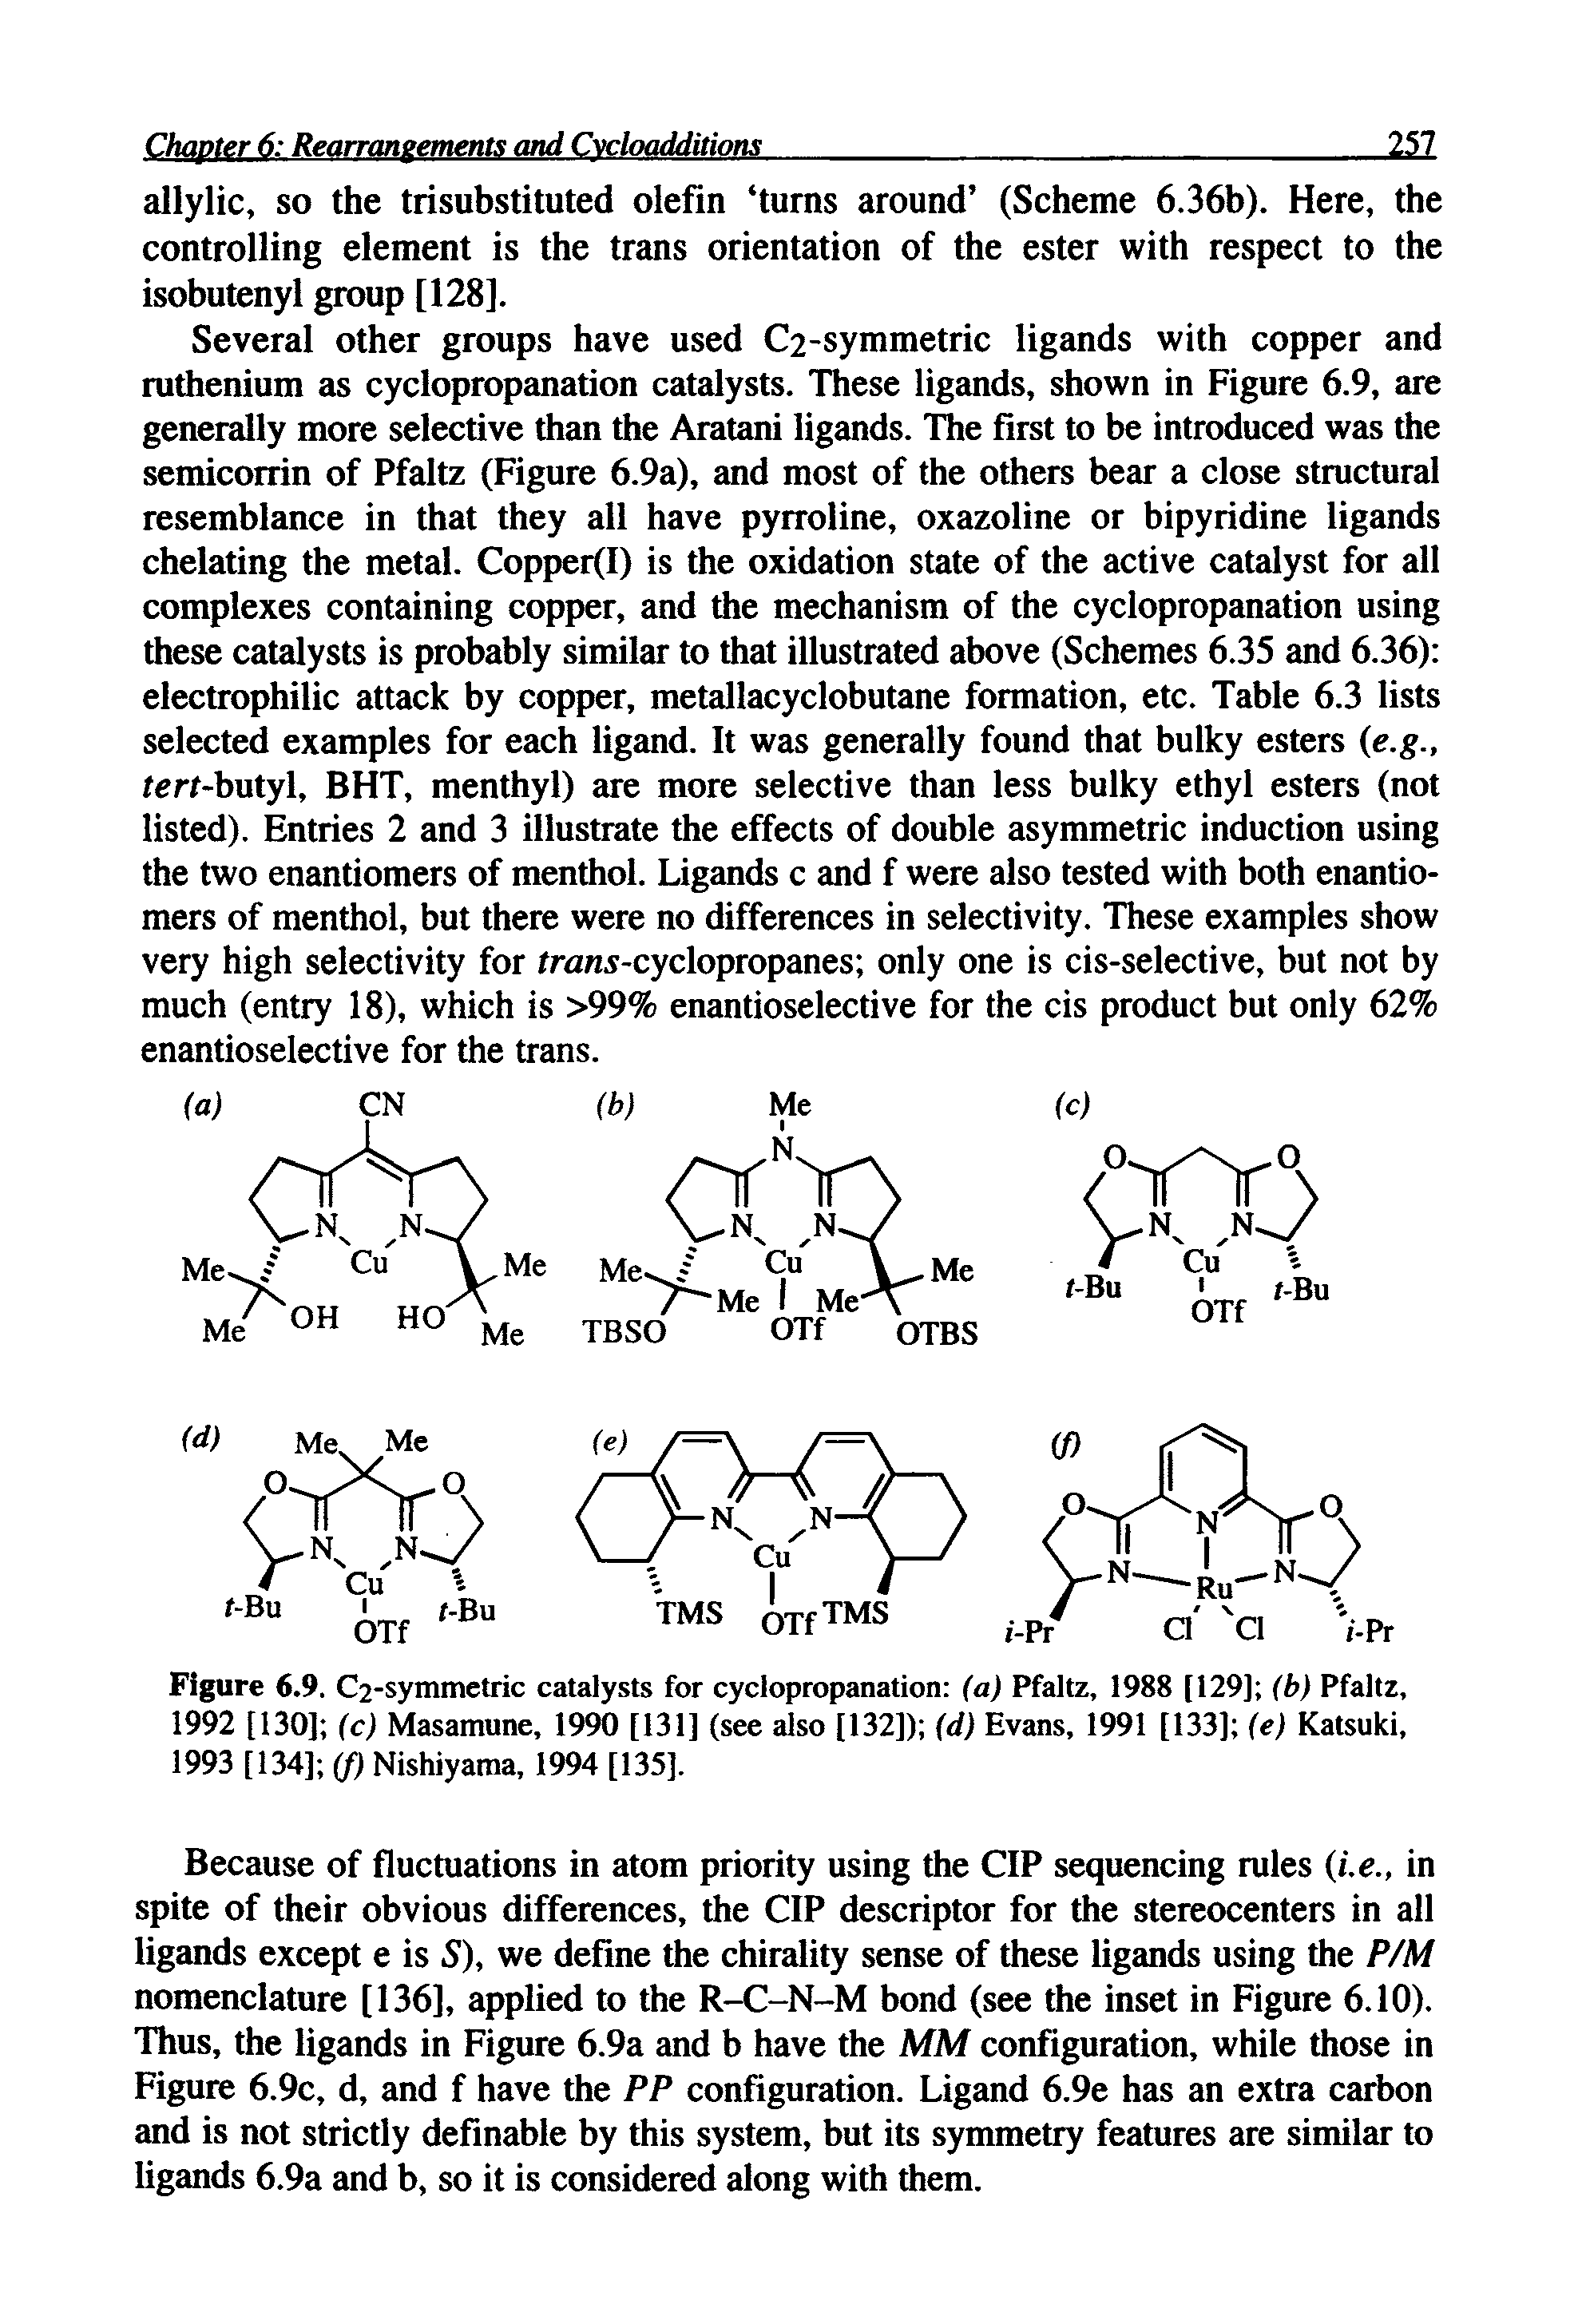 Figure 6.9. C2-symmetric catalysts for cyclopropanation (a) Pfaltz, 1988 [129] (b) Pfaltz,...